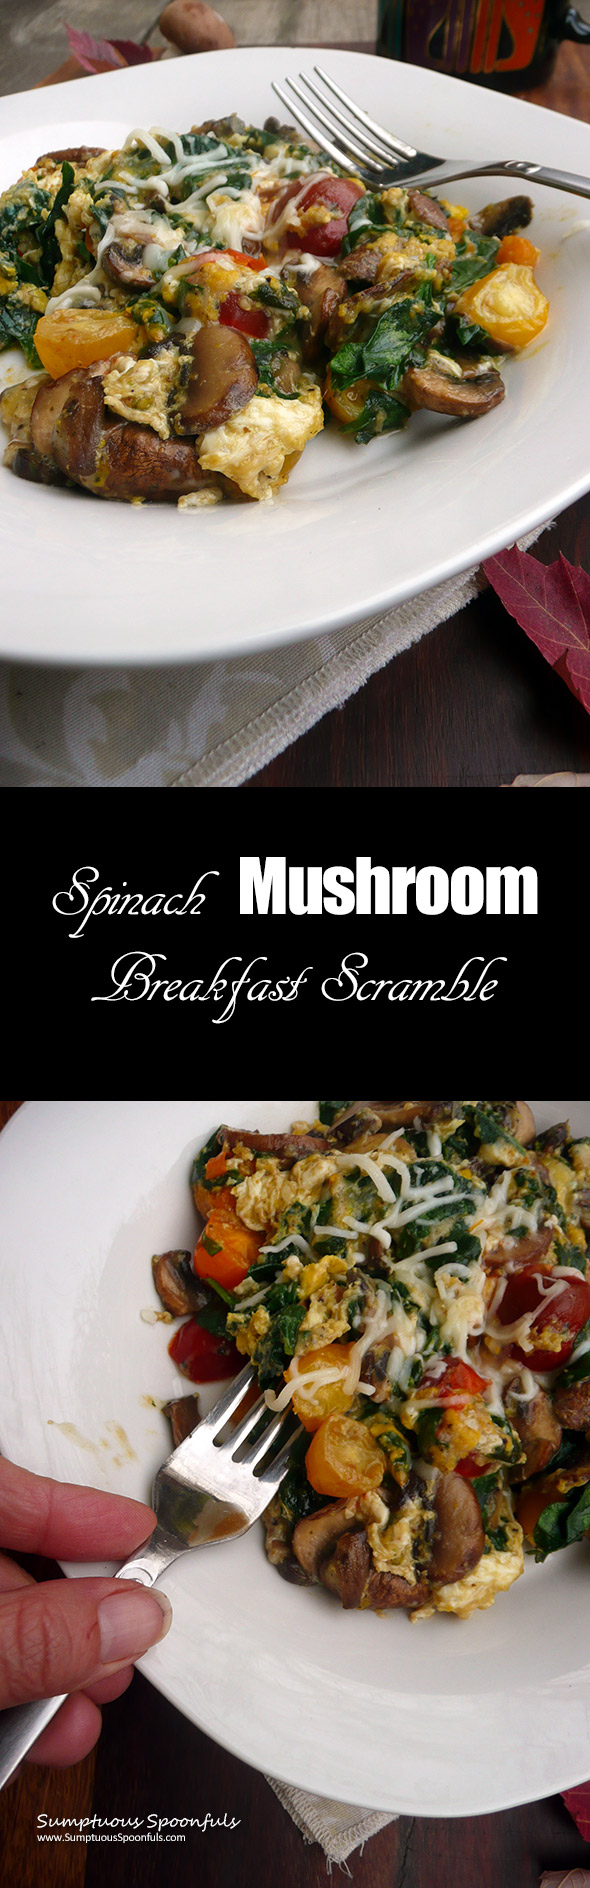 Spinach Mushroom Breakfast Scramble ~Sumptuous Spoonfuls #easy #healthy #delicious #breakfast #recipe